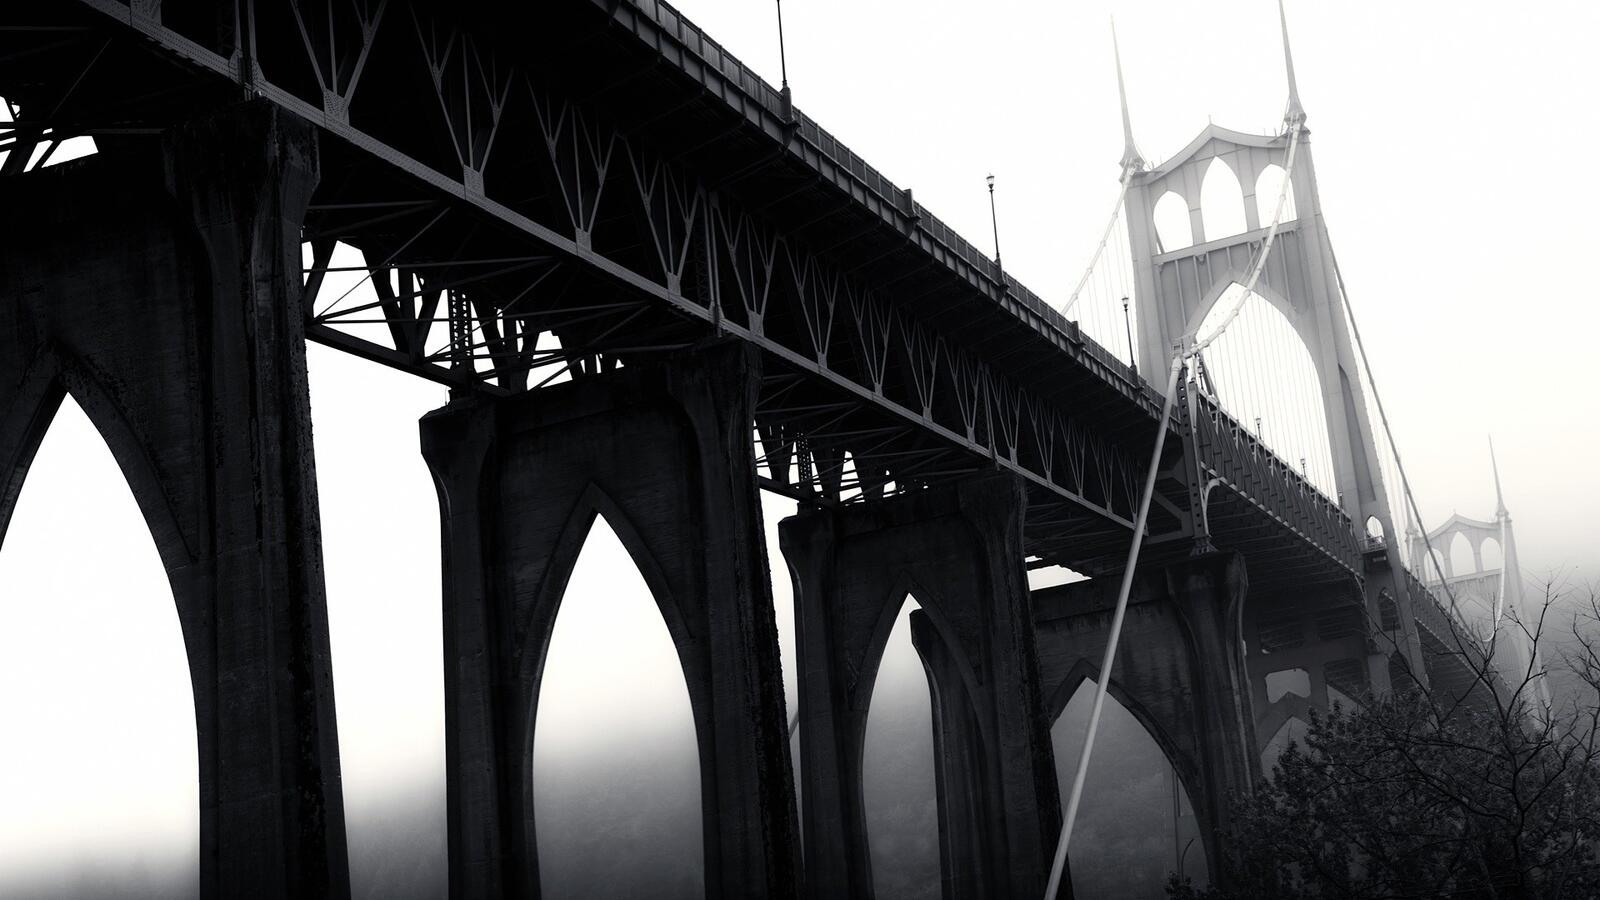 Бесплатное фото Мост в сша ведущий в густой туман